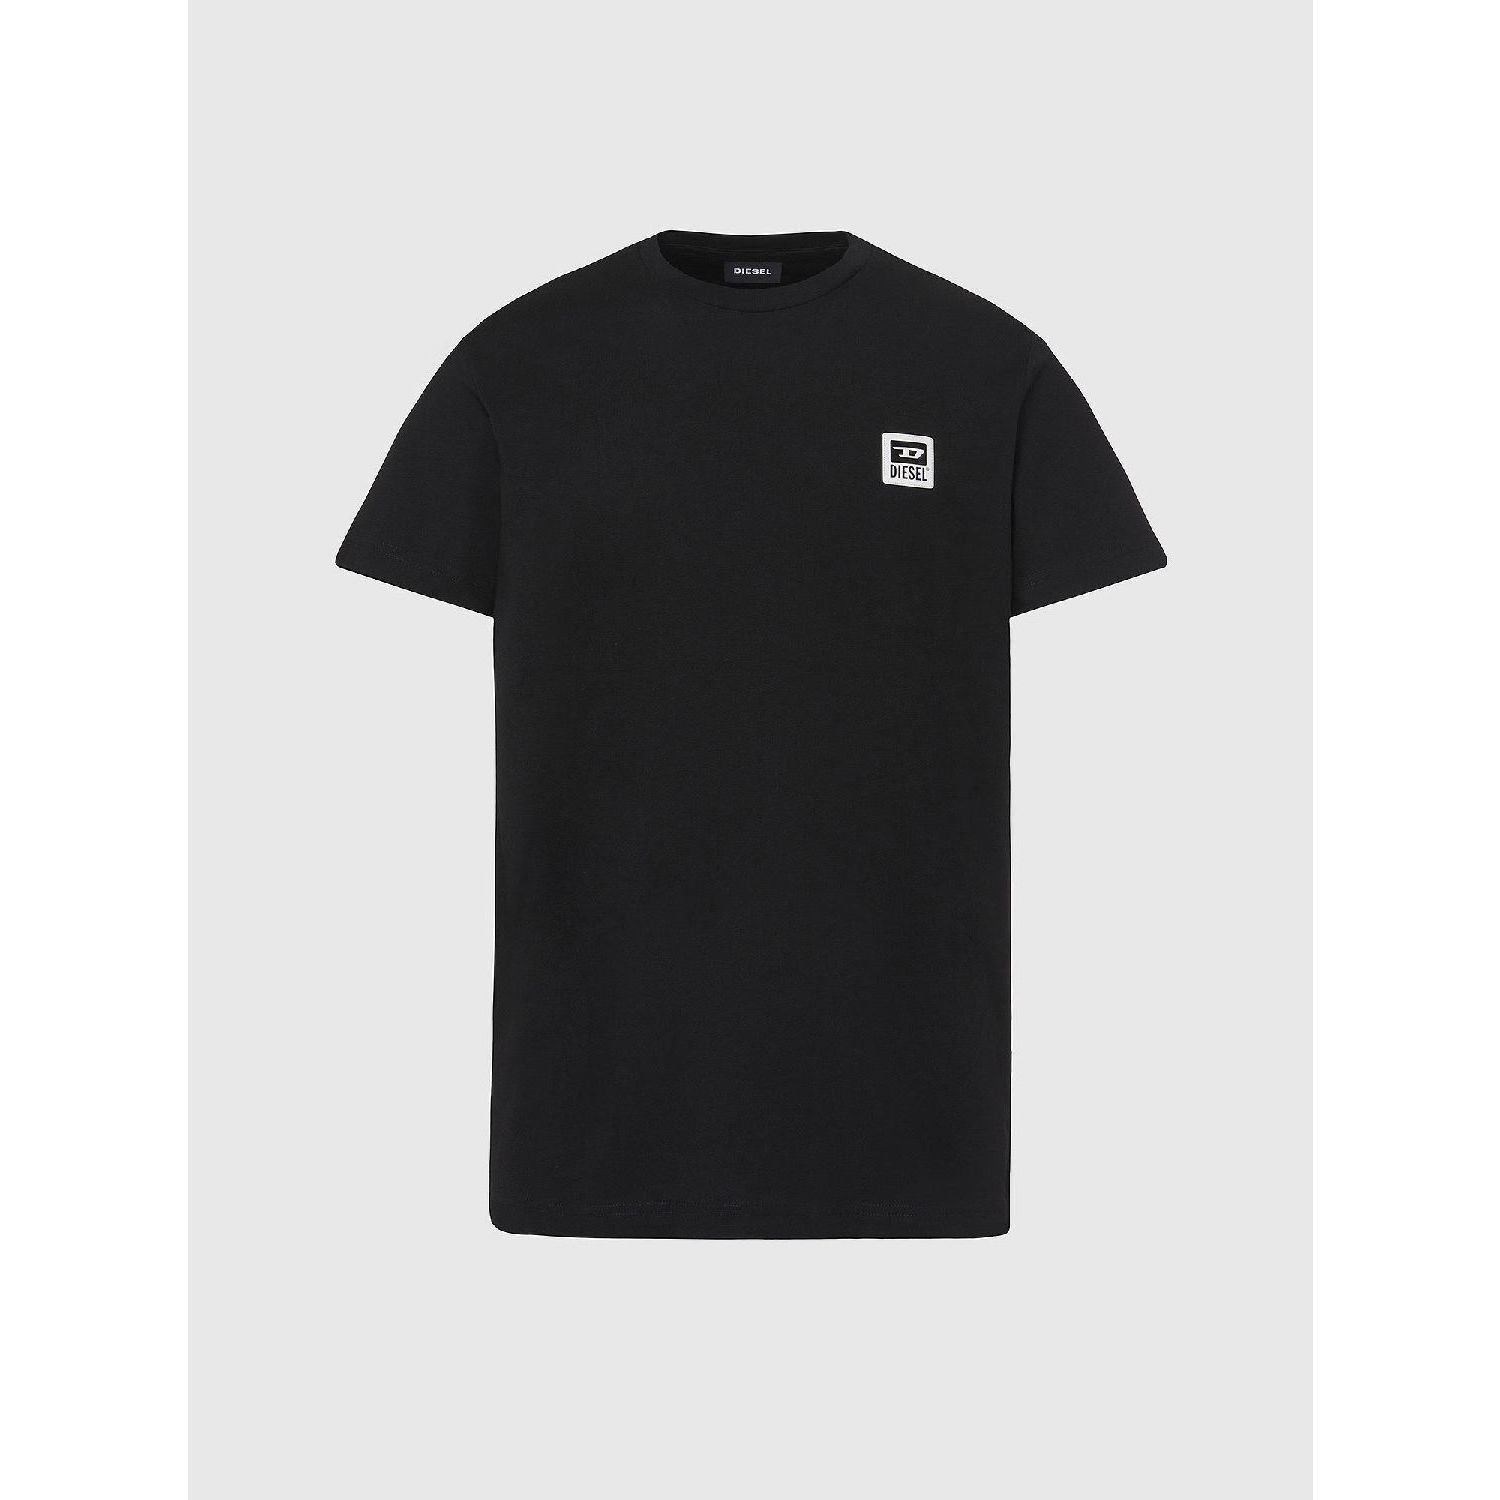 Diesel t-diegos-k30 t-shirt black 900